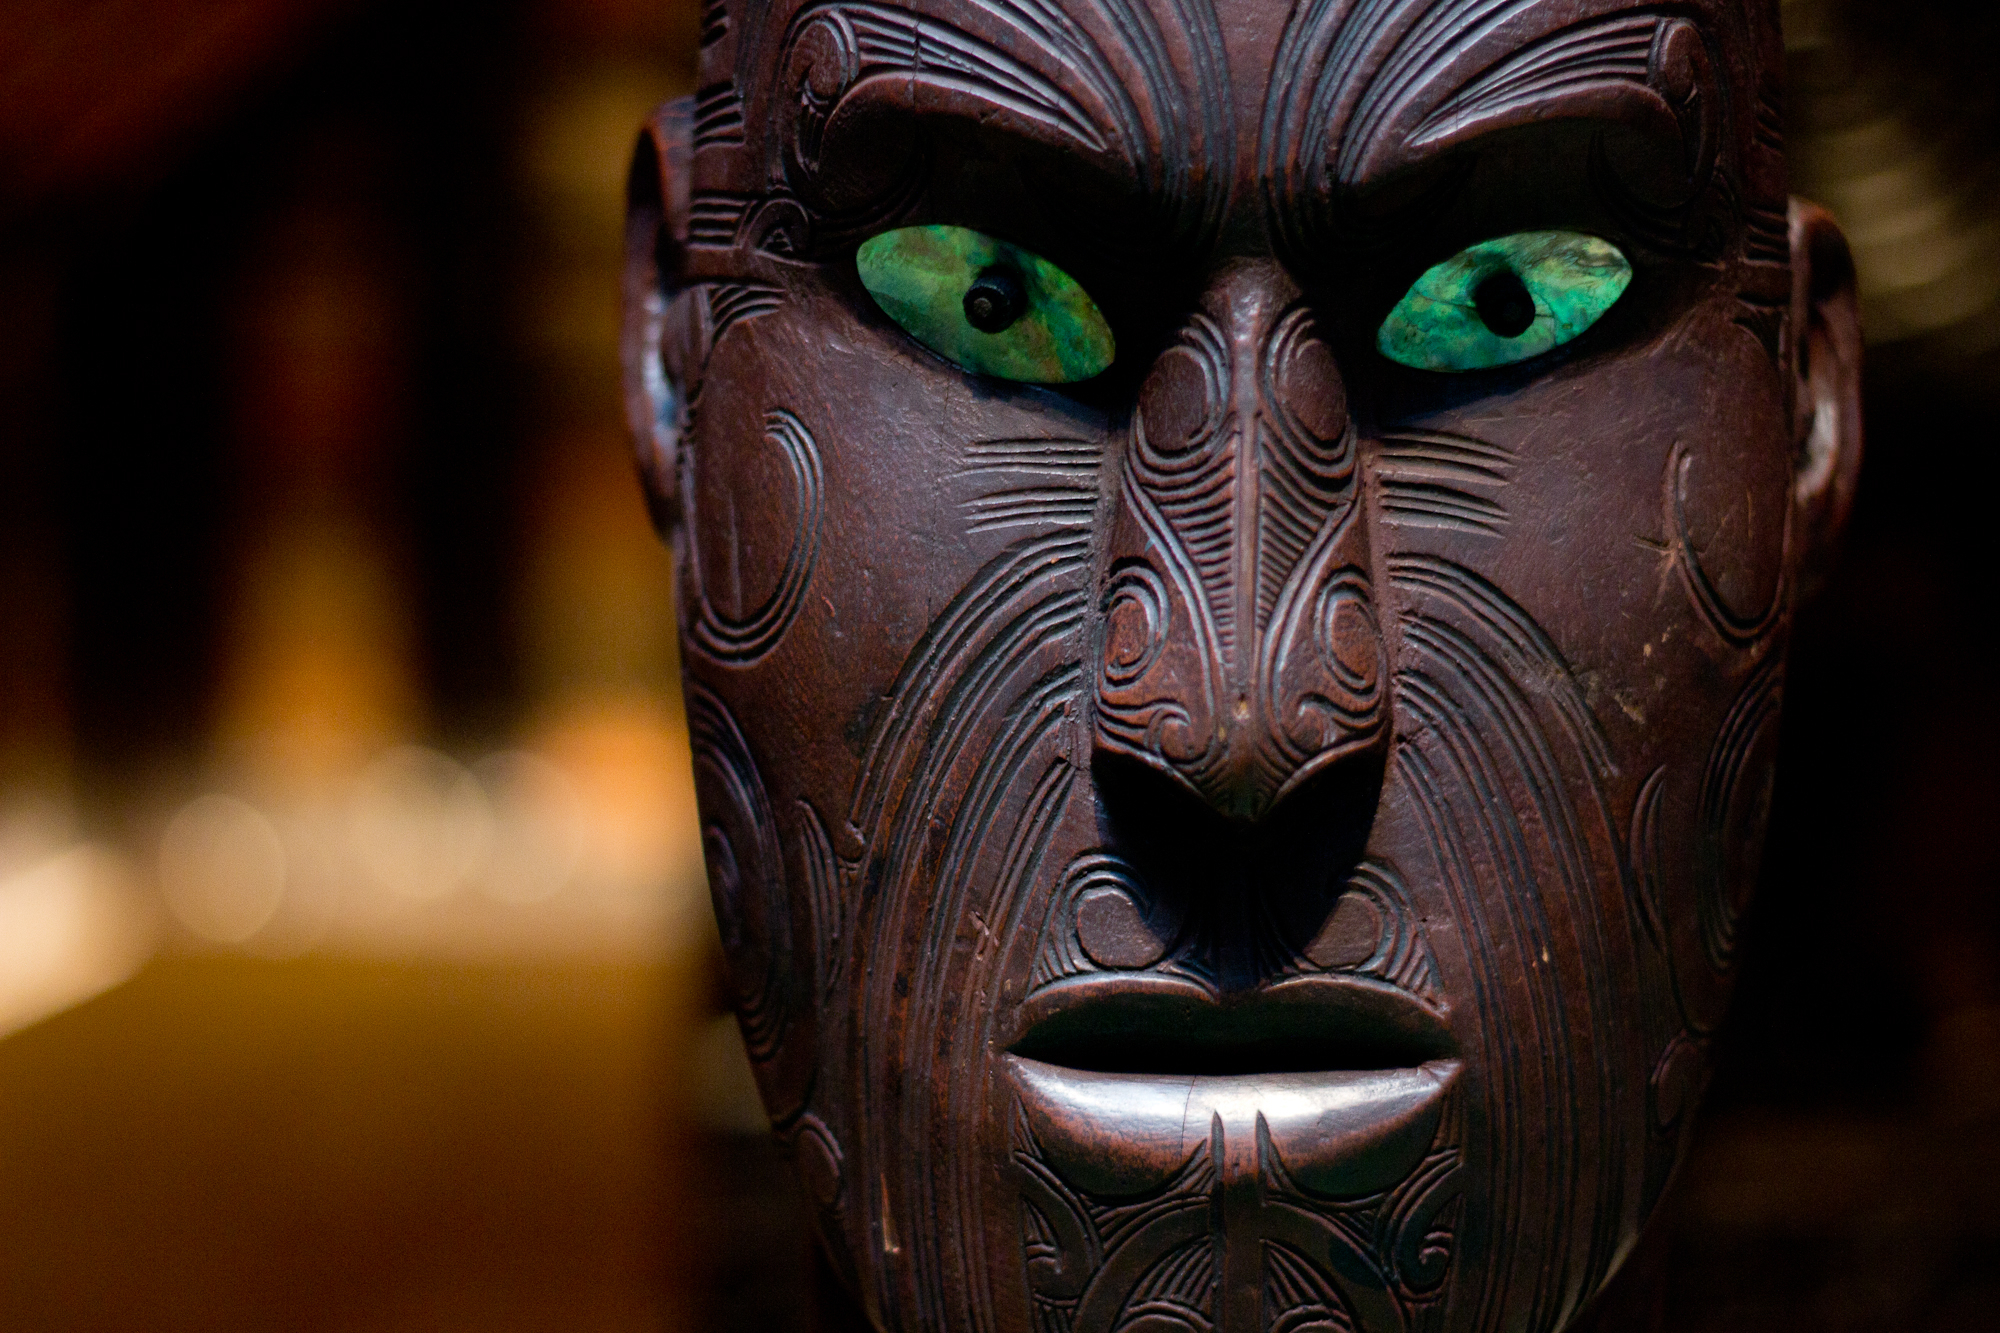 Diese Maske der Maori ist vermutlich mehr als 200 Jahre alt und gehört zum Bestand des Museums am Rothenbaum.